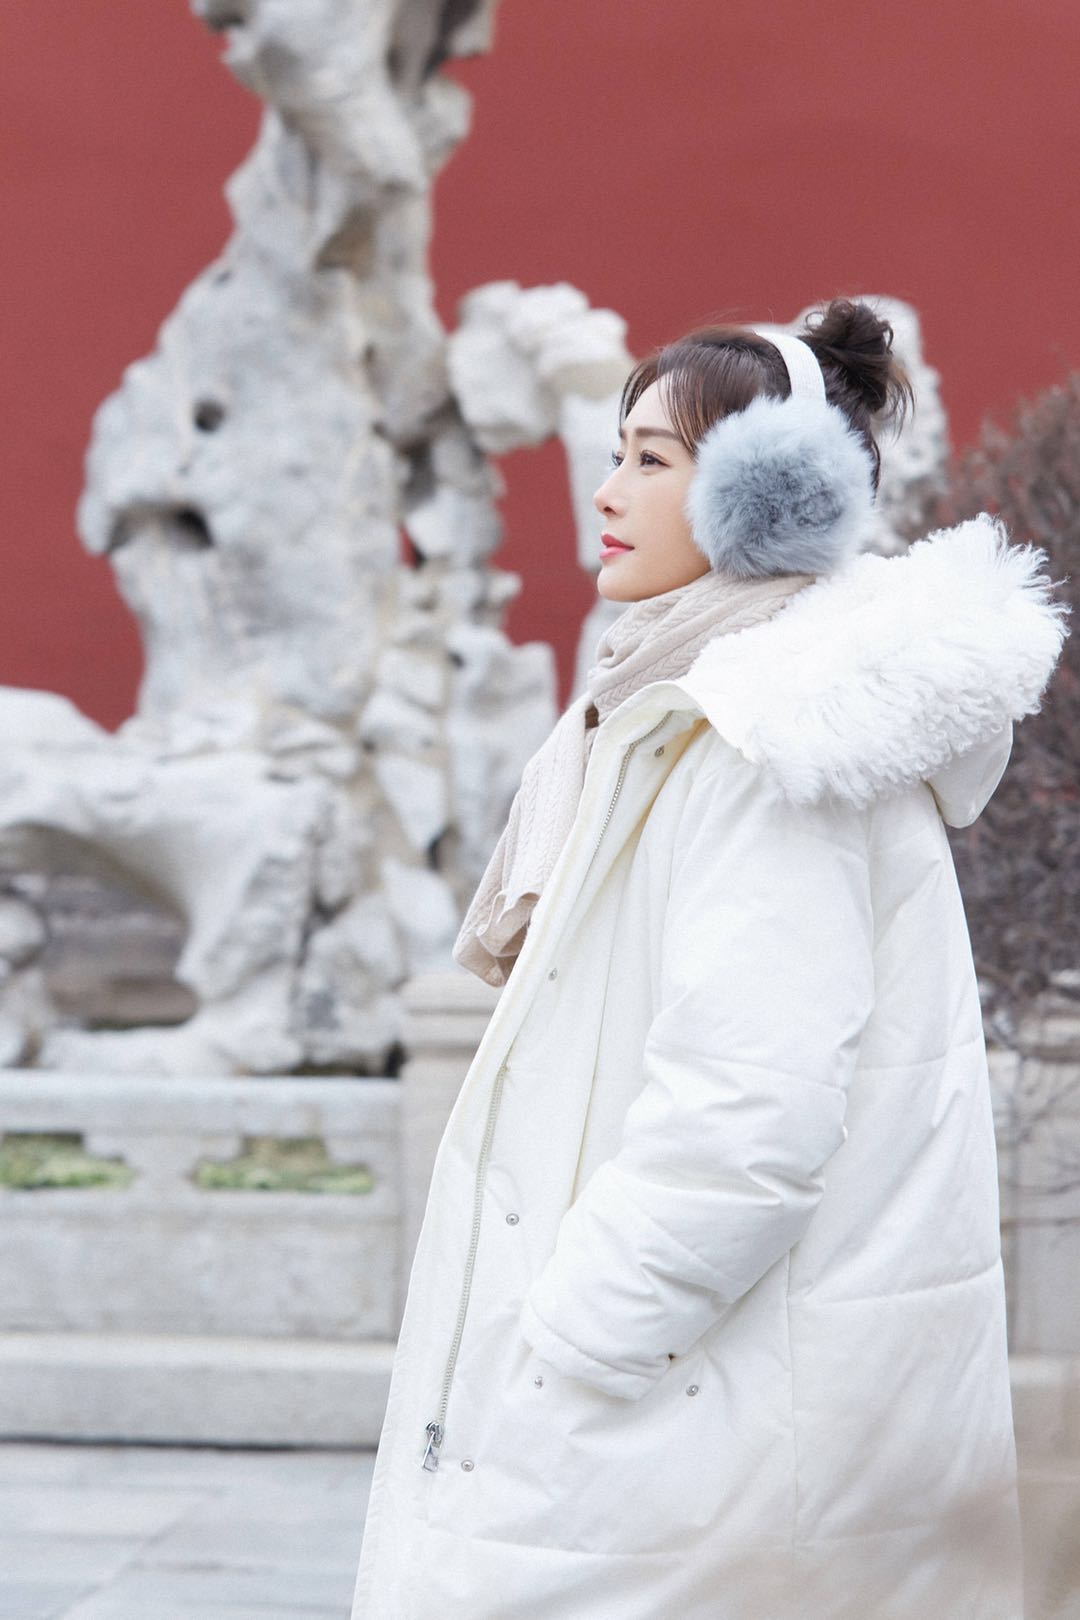 秦岚穿白色羽绒服优雅又惊艳,戴耳罩更保暖!认真过冬没错了